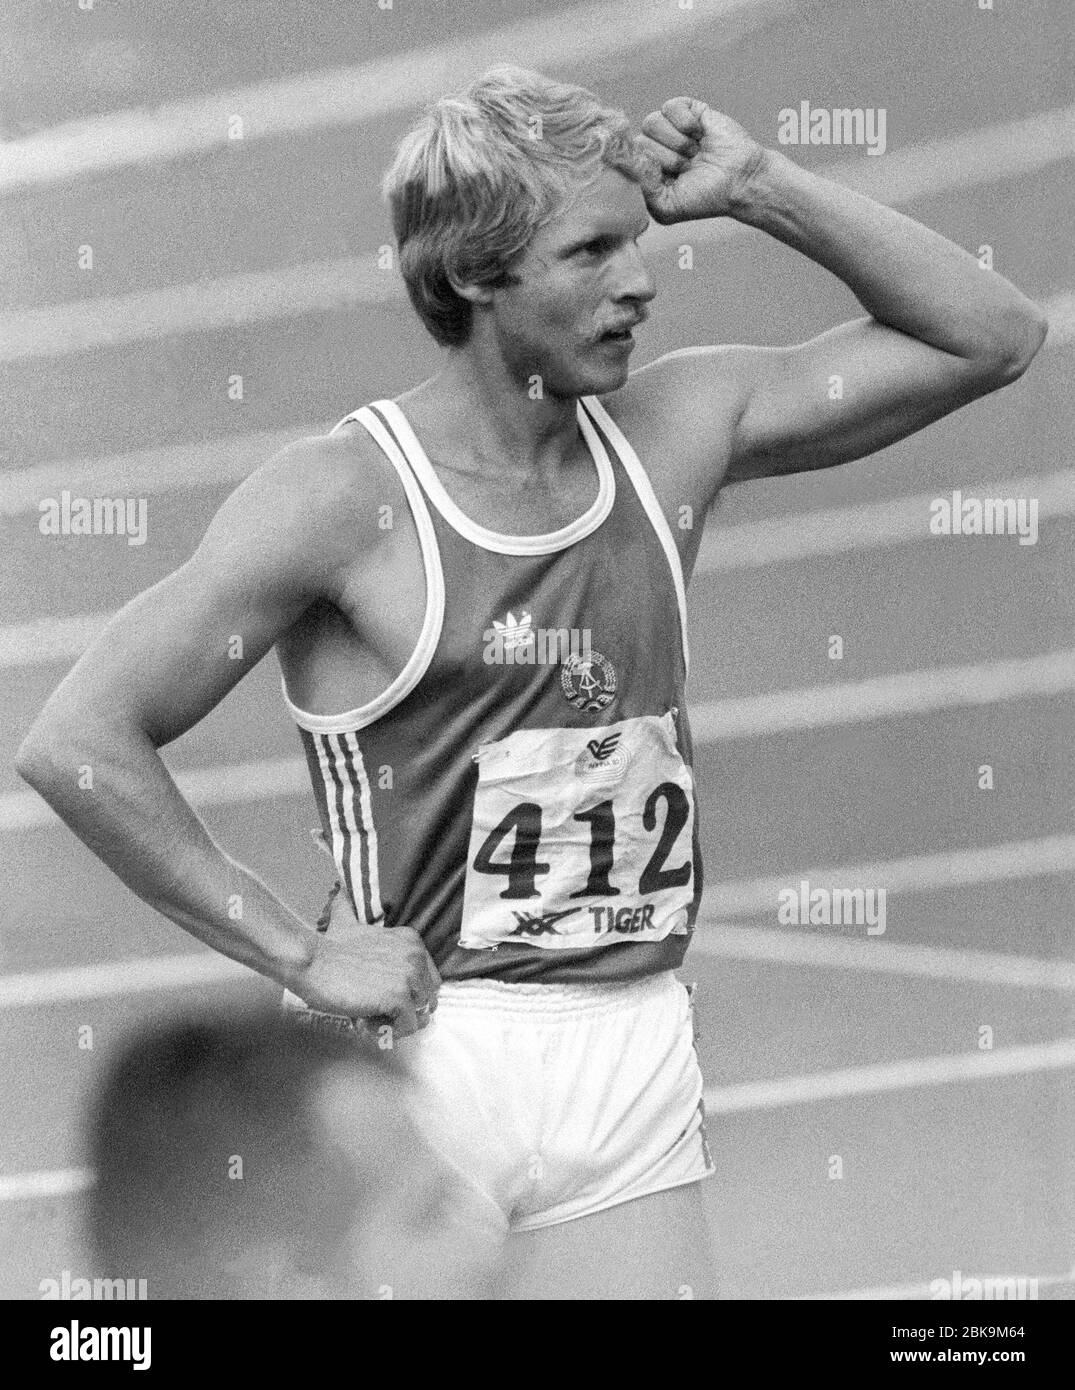 OLAF PREZZLER Germania Est vince 200 m al Campionato europeo di Stoccarda 1986 Foto Stock